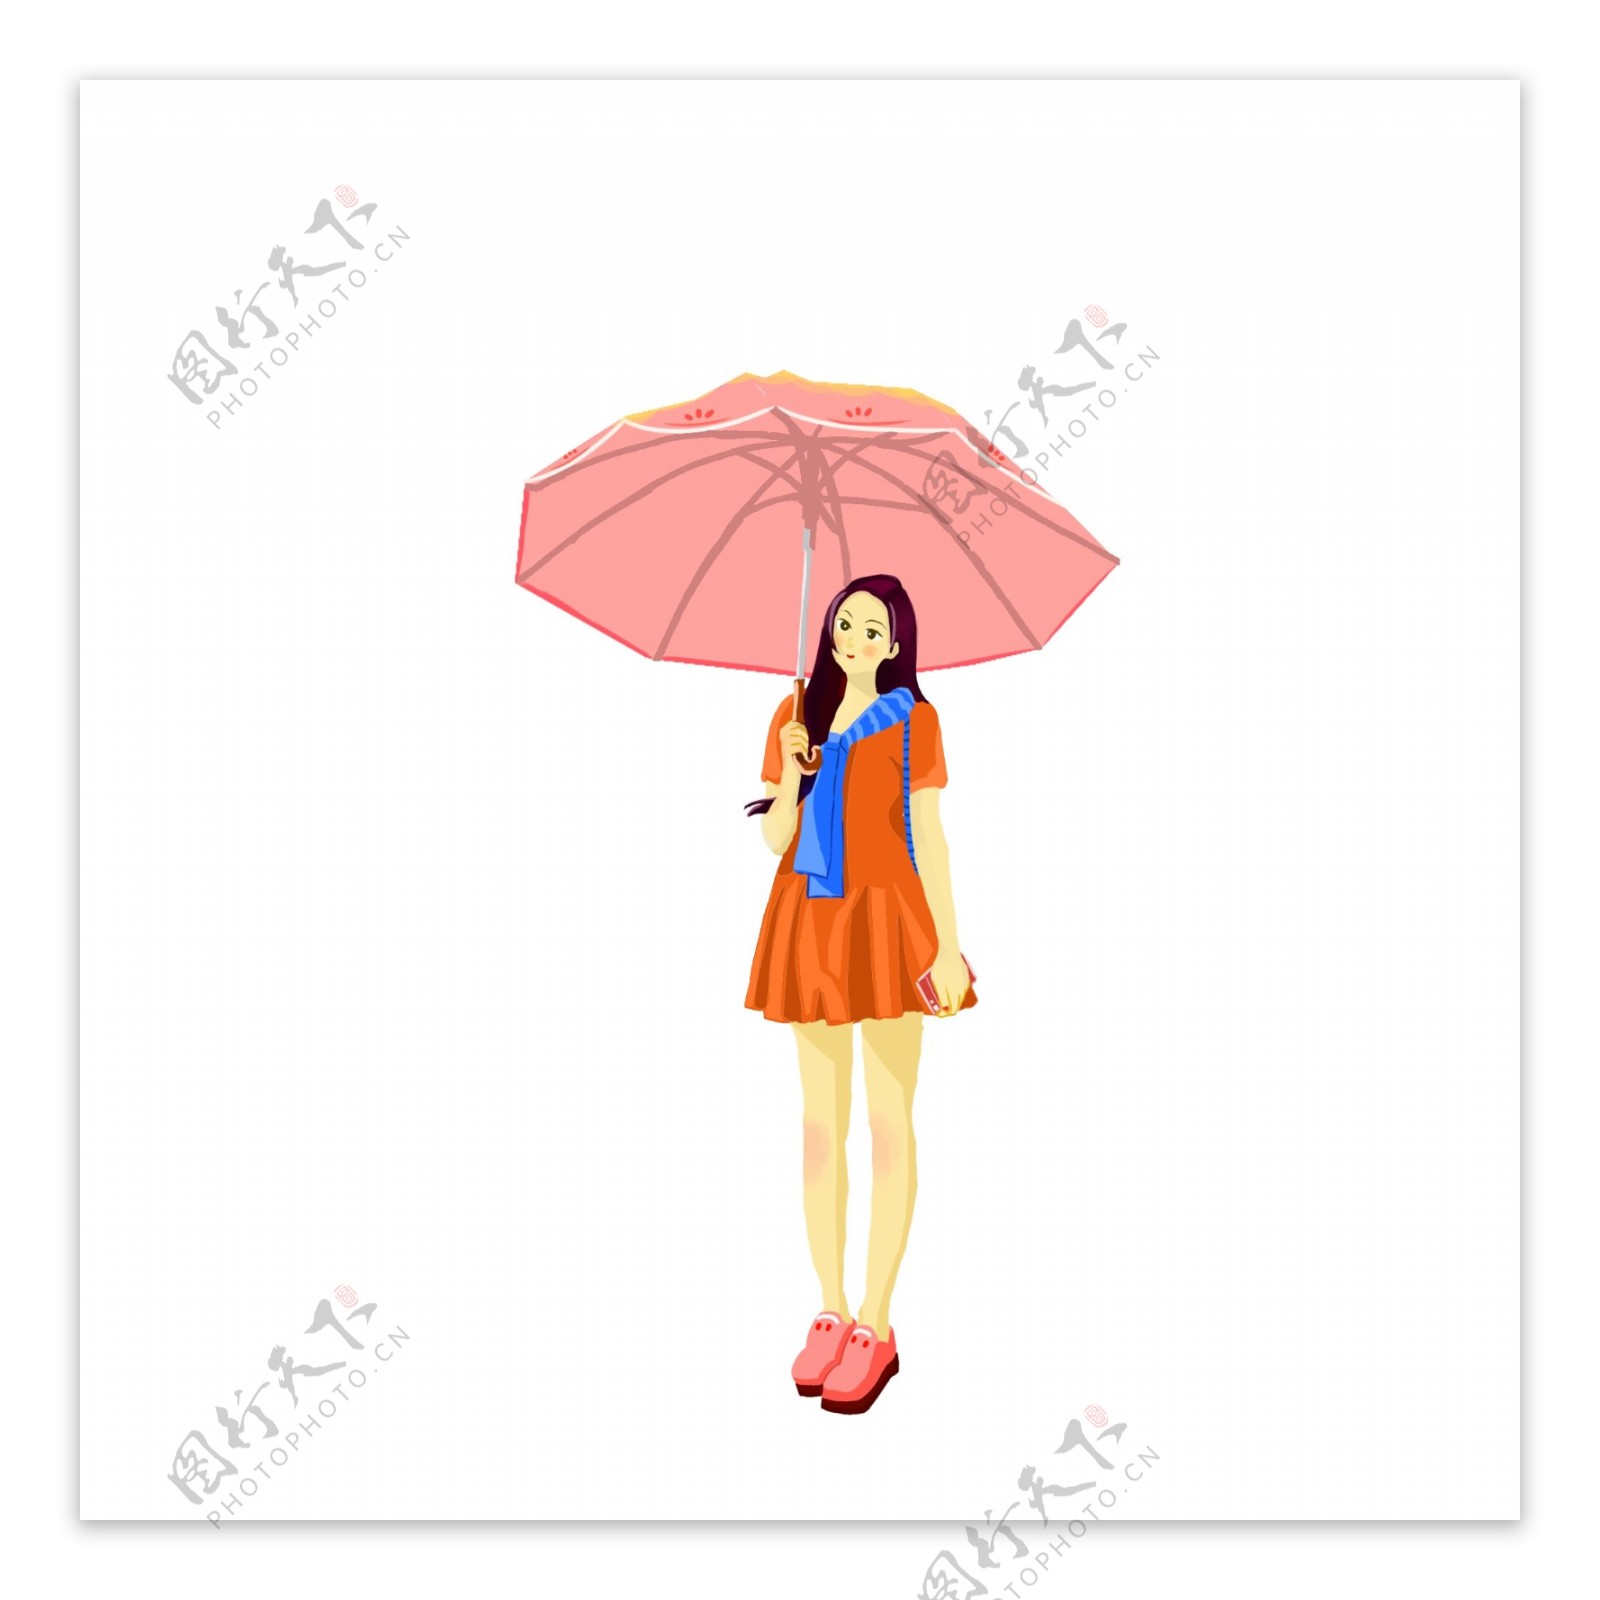 【绘画参考】女性撑伞的多角度动态姿势（动态速写素材） - 哔哩哔哩